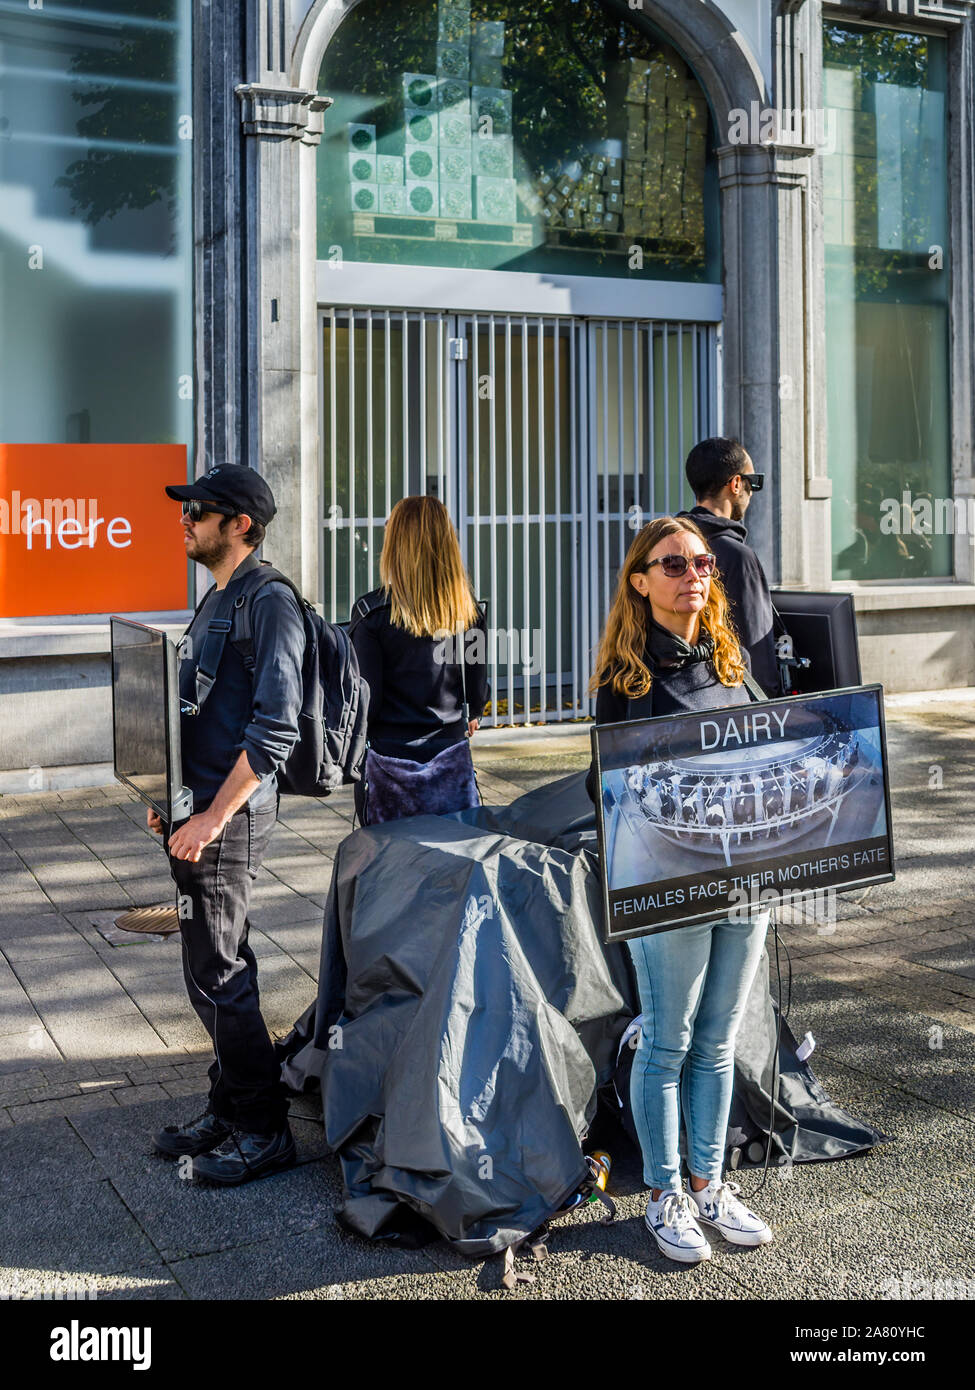 Stiller Protest über Veganismus und Tierrechte - Antwerpen, Belgien. Stockfoto